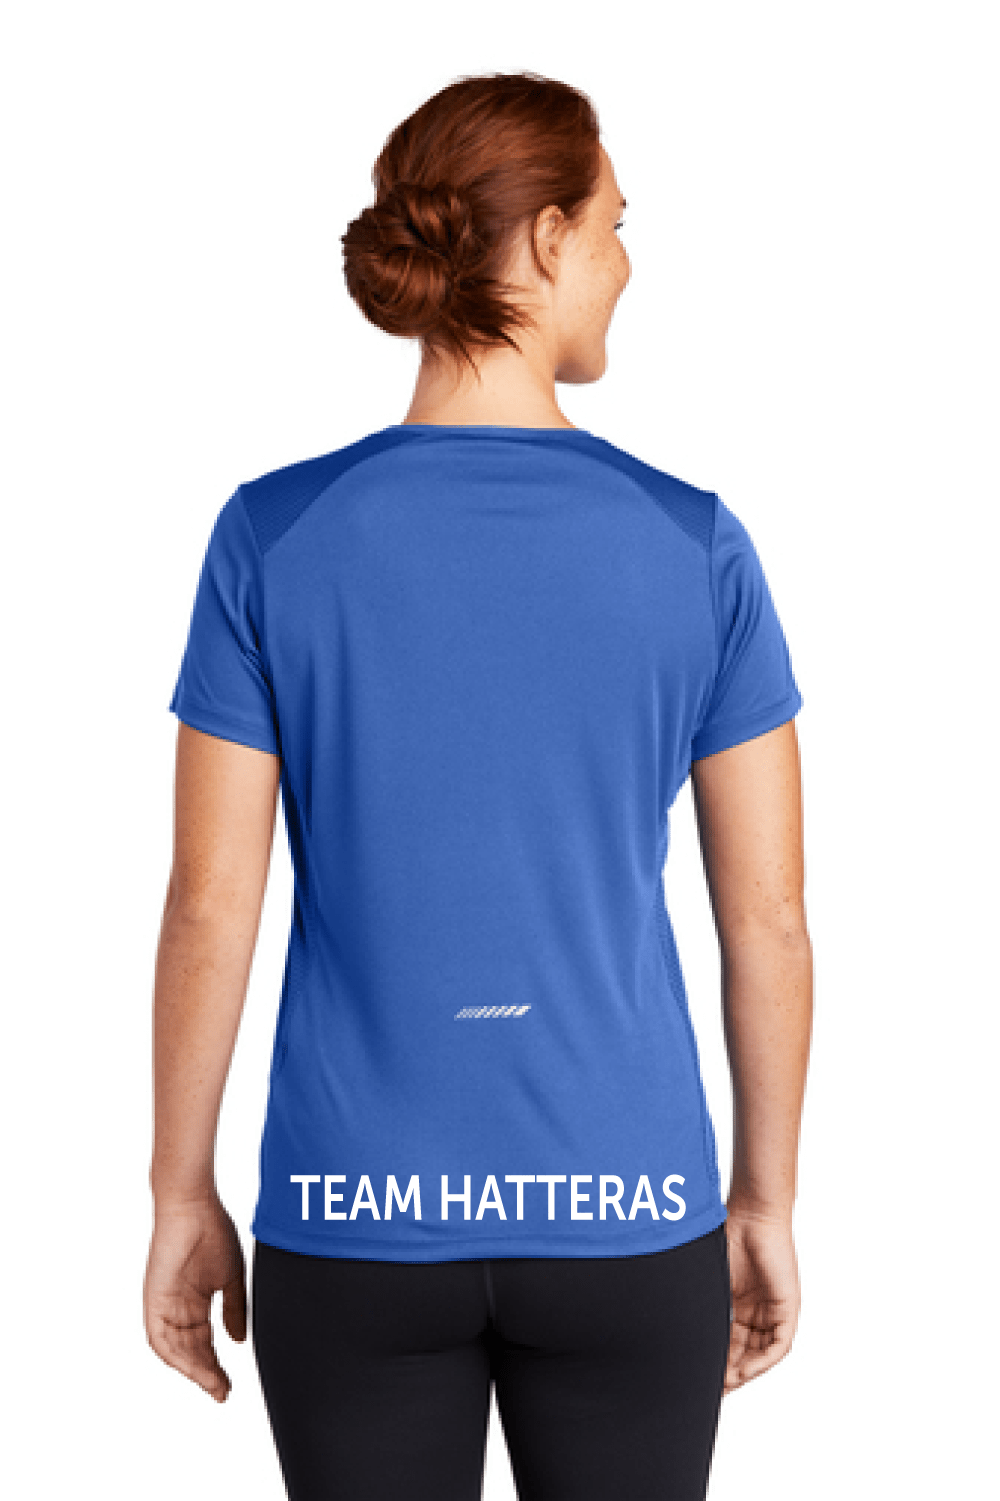 Hatteras Women's Scoop Neck Tee Signature Lacrosse